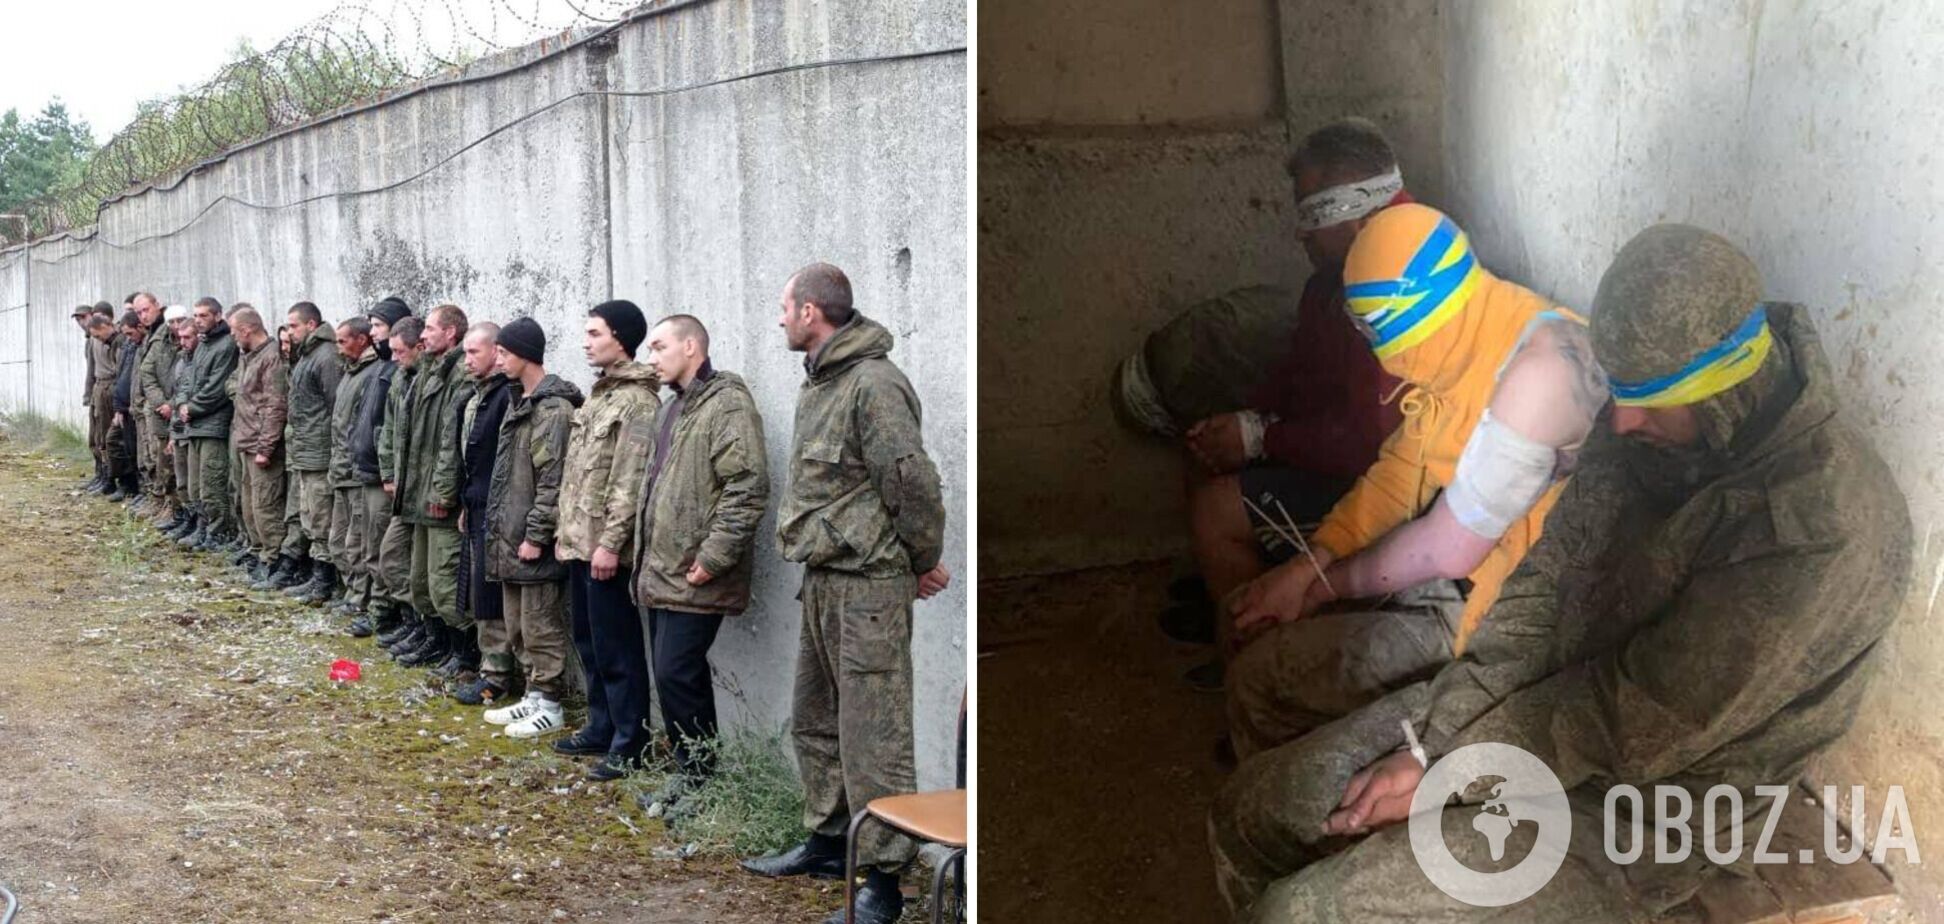 Десятки российских солдат сдались в плен ВСУ в Харьковской области: в сети показали фото